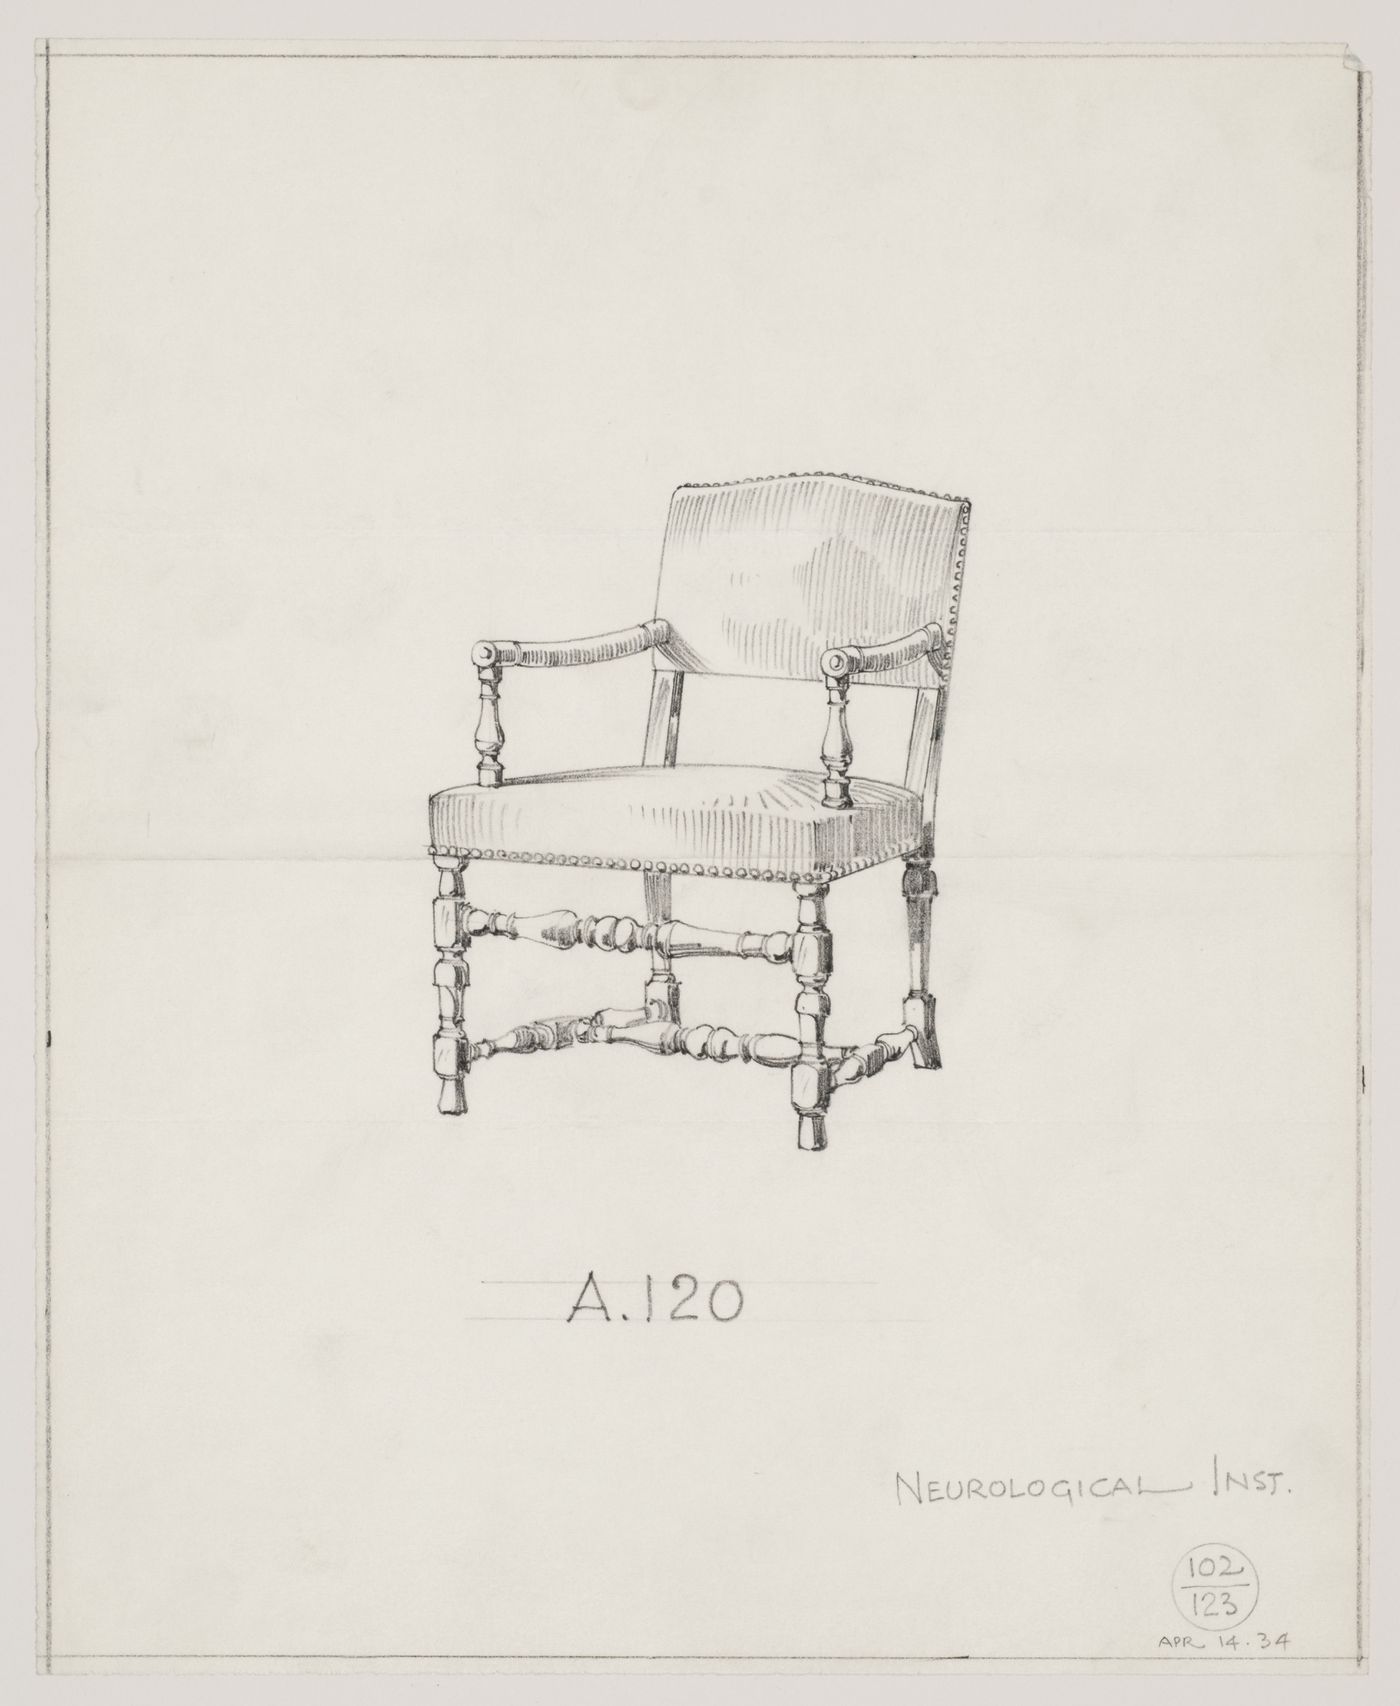 Montréal Neurological Institute, Montréal, Québec: drawing of a chair